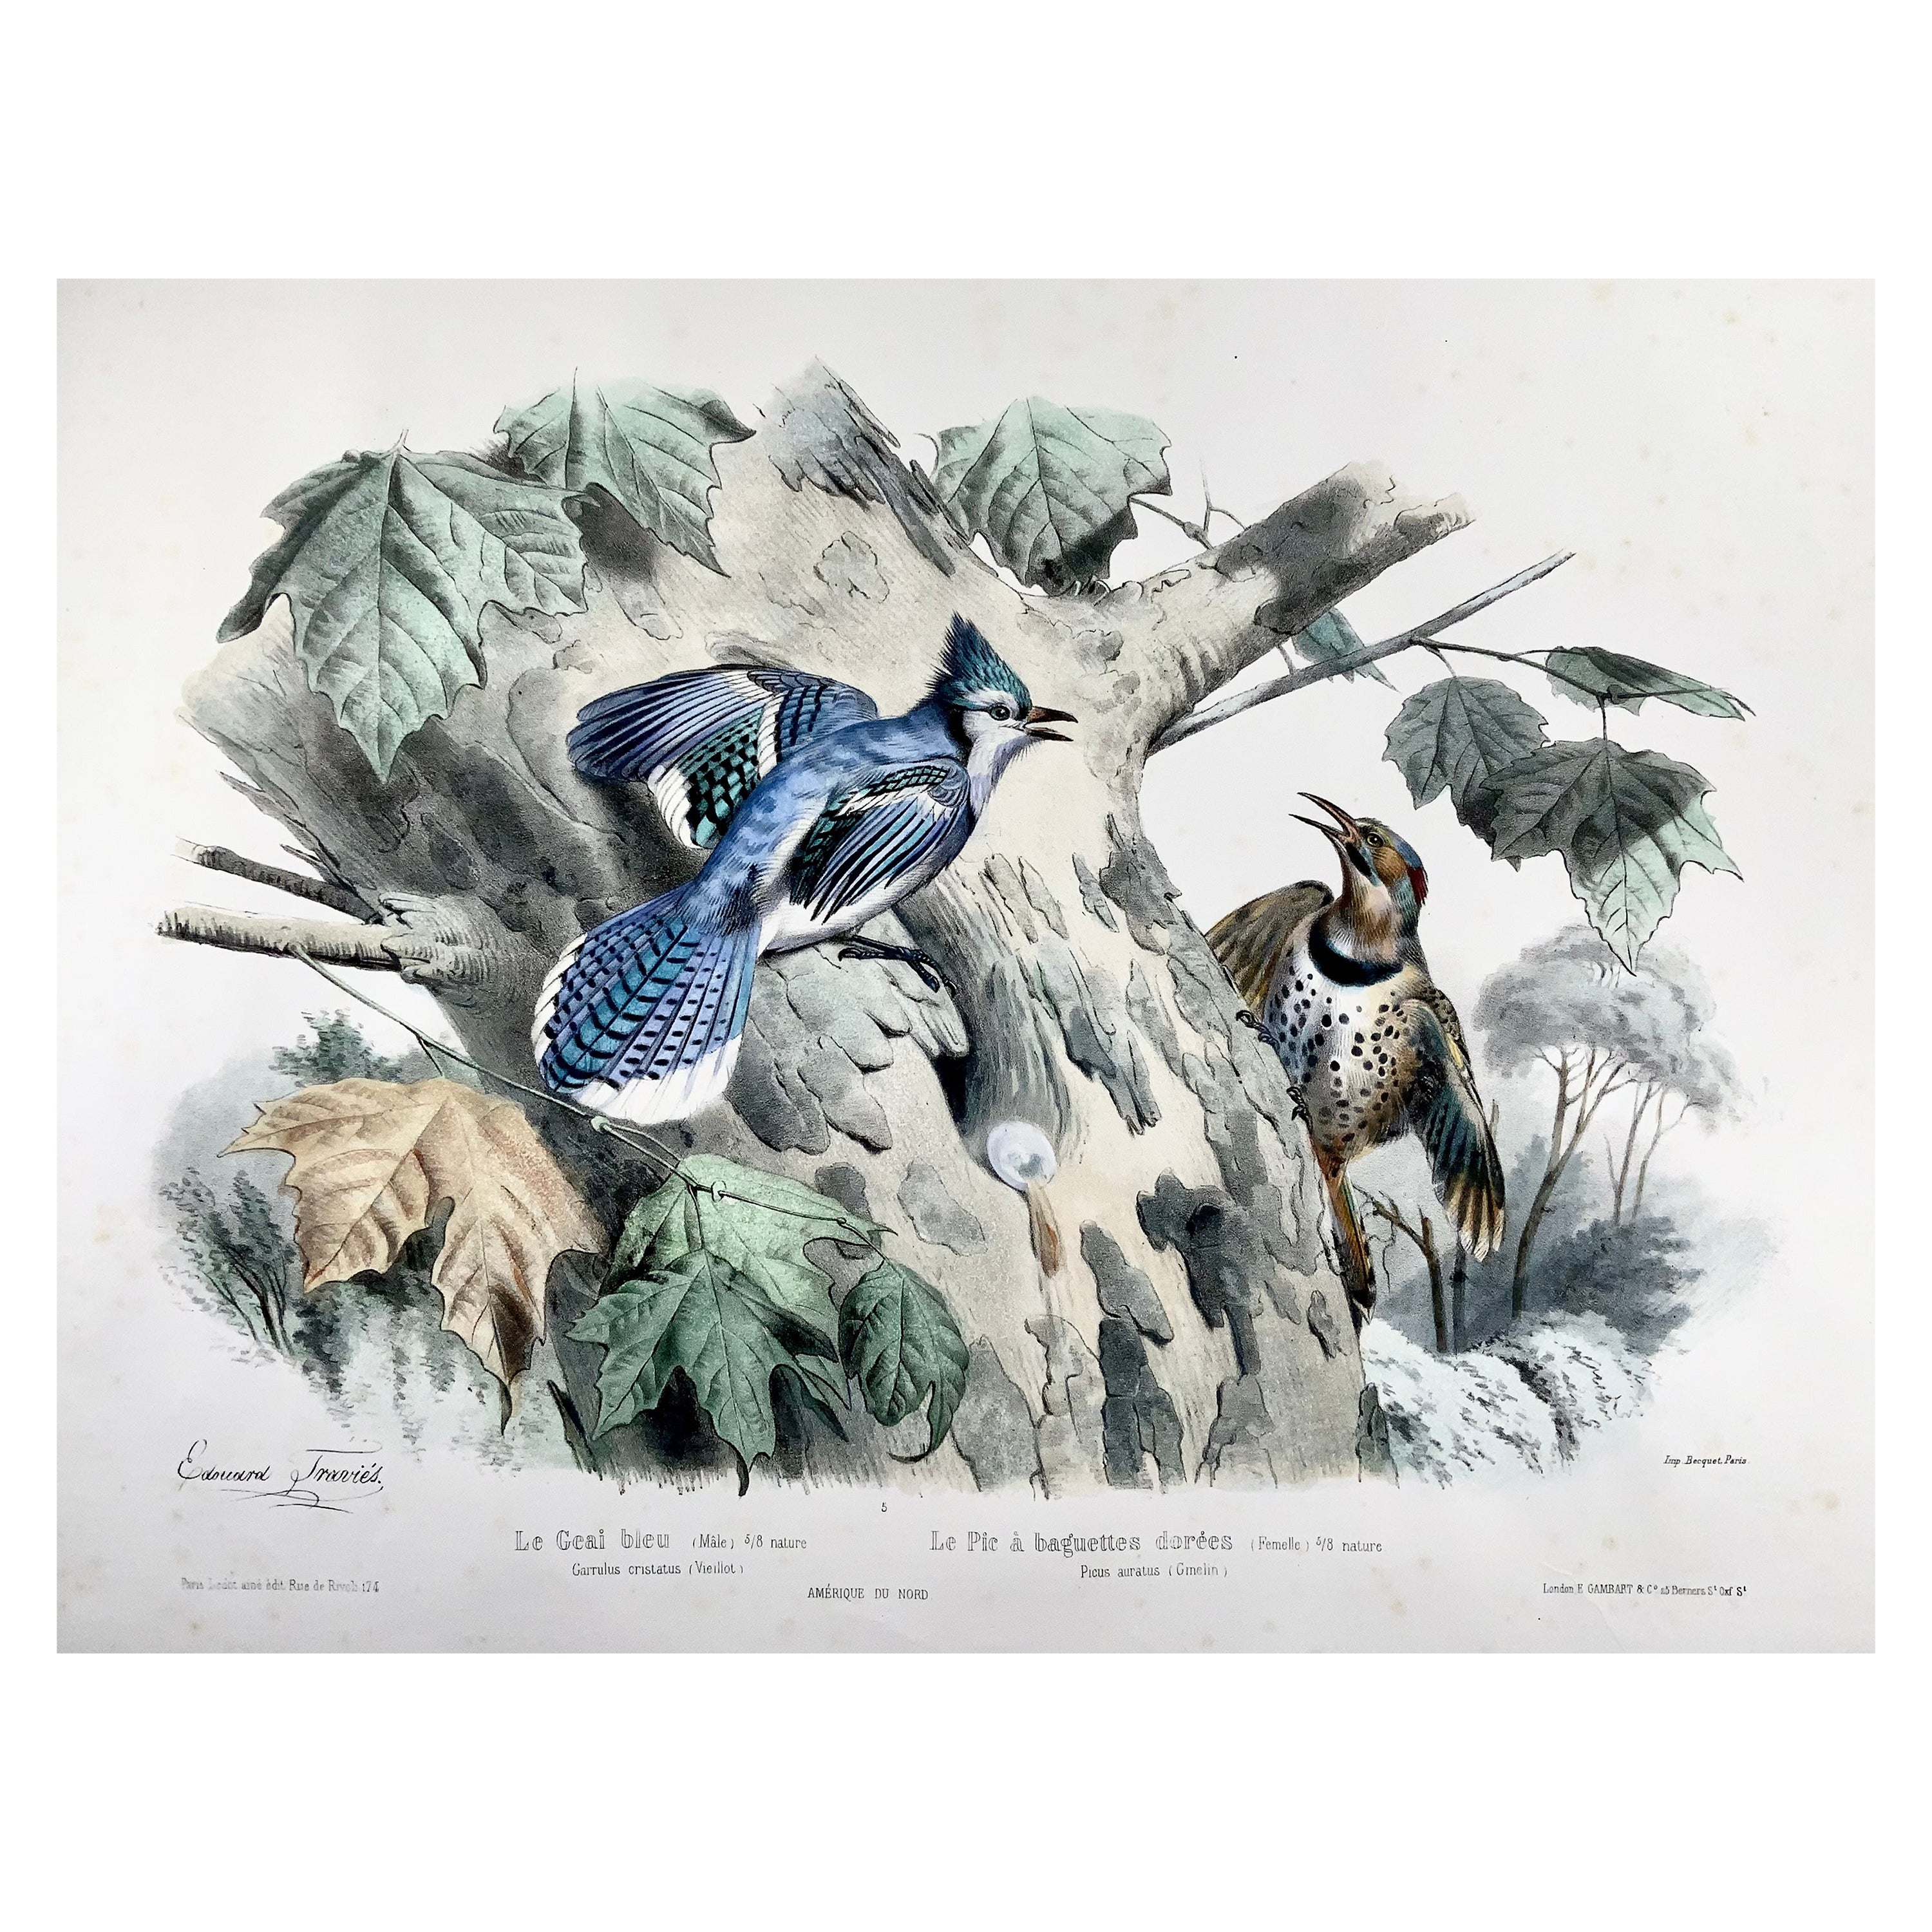 1857 Ed Travies, Le Geai bleu, Le Pic, Ornithologie